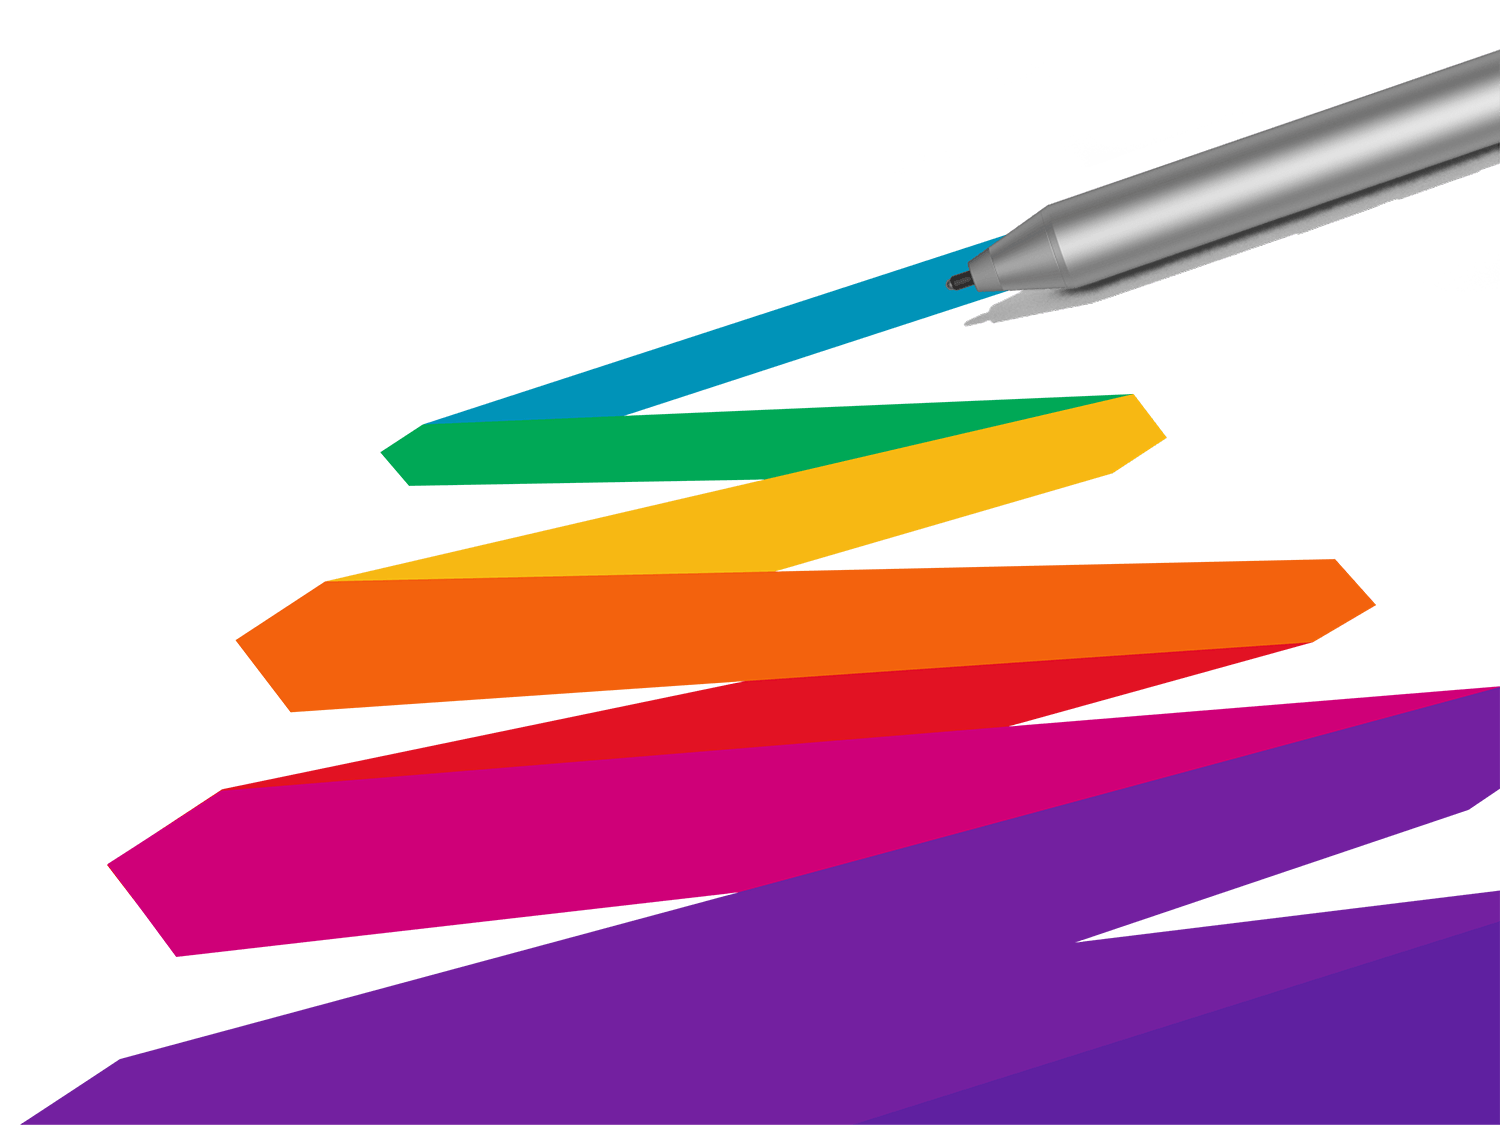 Surface Pen ਦੁਆਰਾ ਖਿੱਚੇ ਗਏ ਚਮਕੀਲੇ ਰੰਗ